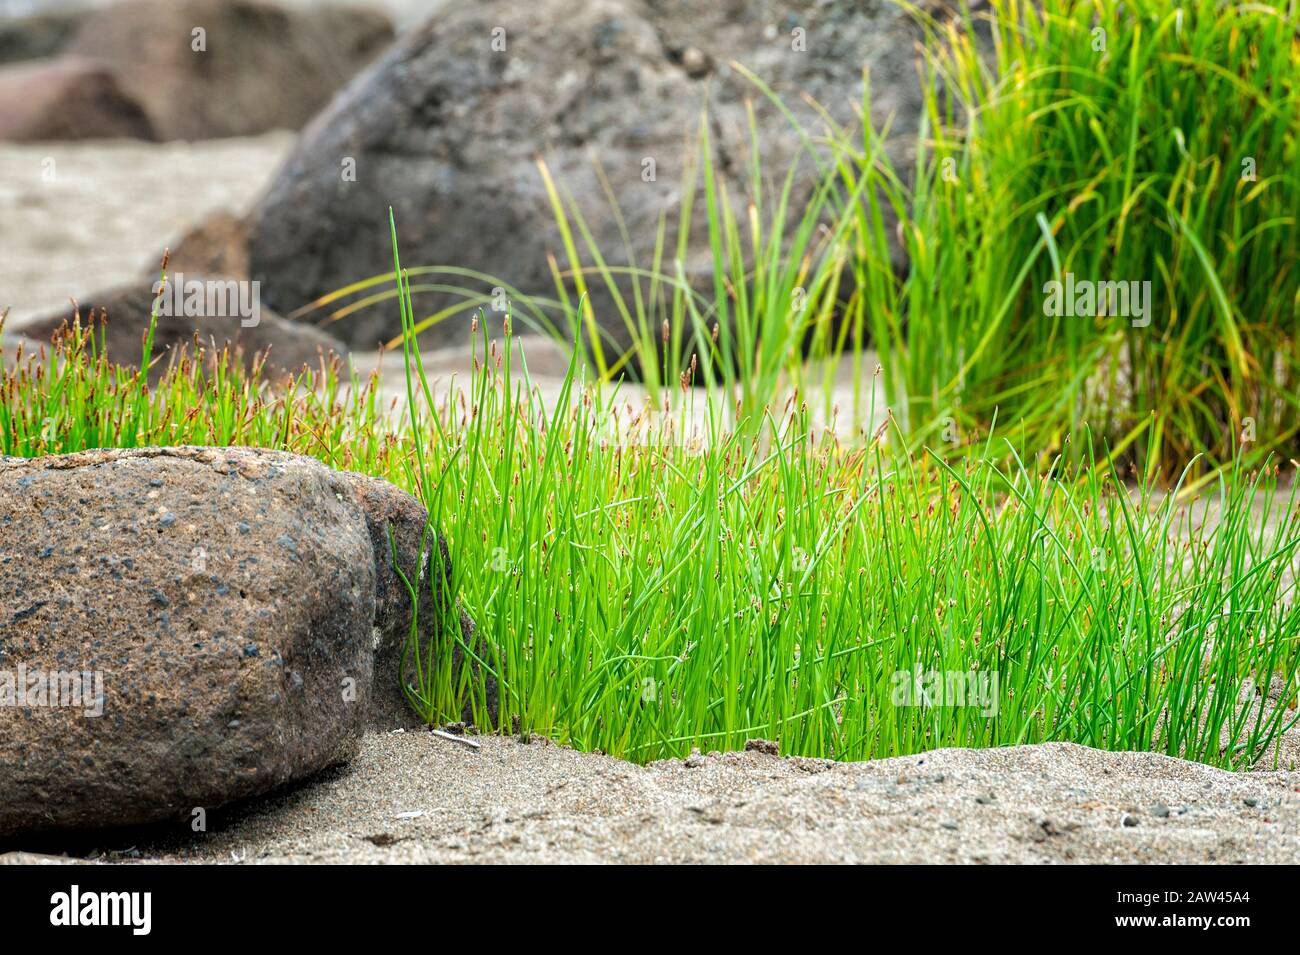 La corniche verte se distingue parmi les rochers et le sable de Fogart Creek Beach à Lincoln City, sur la côte de l'Oregon. Banque D'Images